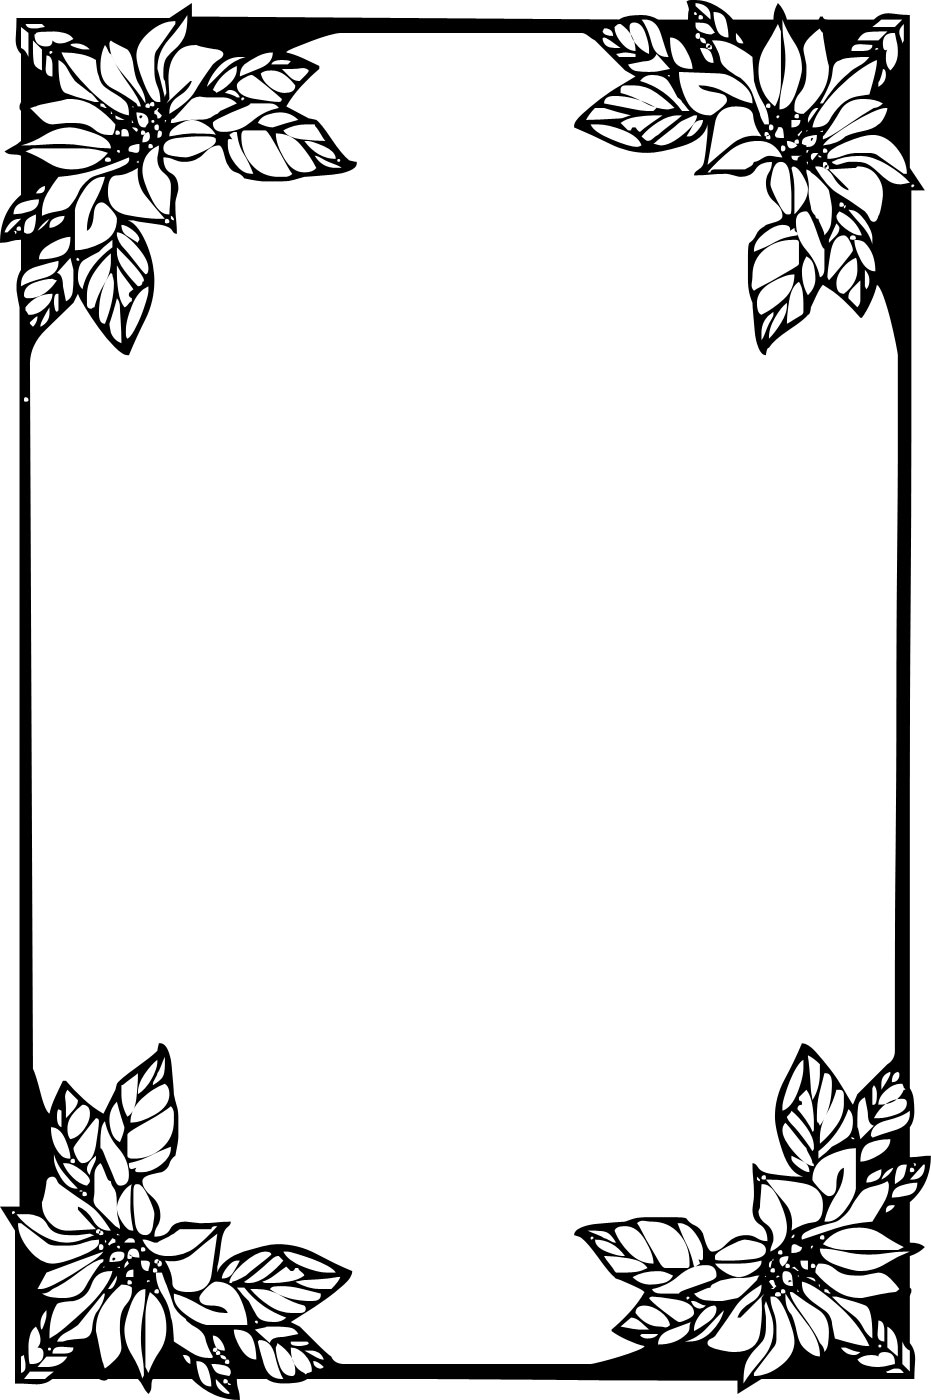 花のフレーム枠イラスト-白黒・コーナー